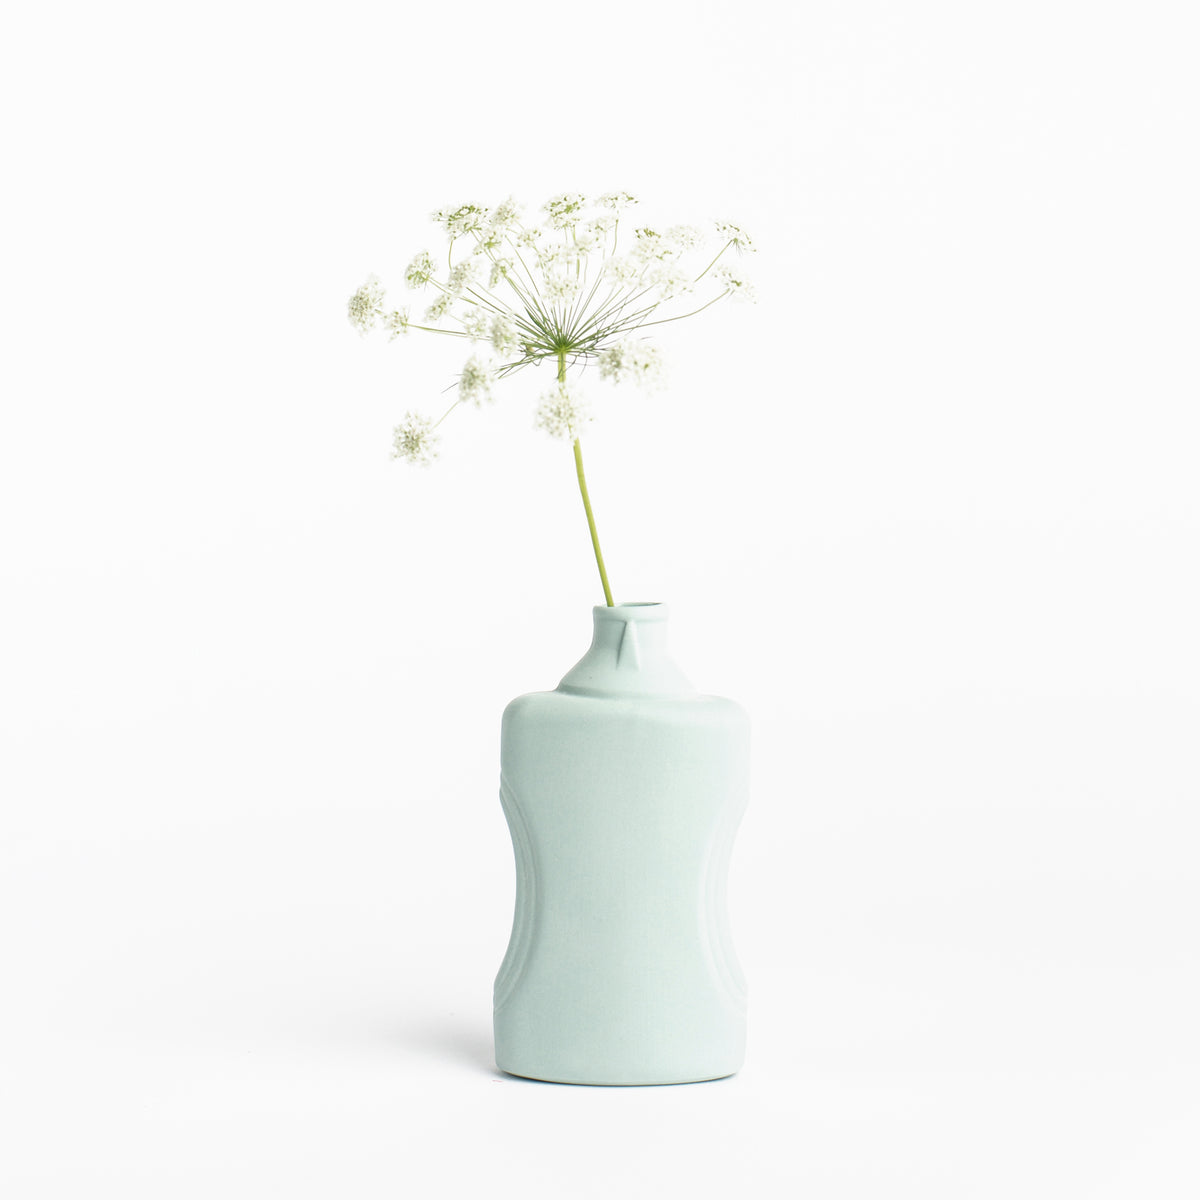 Porzellan-Vase #21 von Foekje Fleur bei Wilhelm die 3.